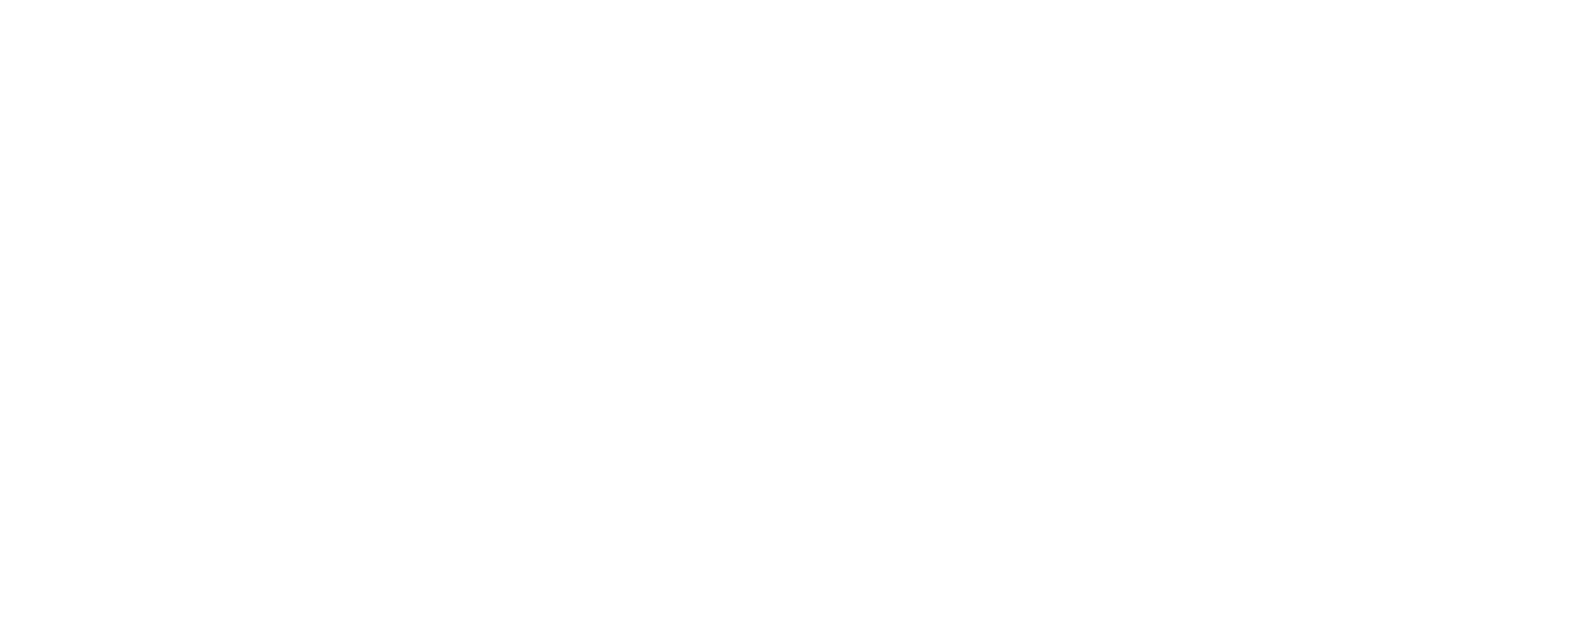 Victory Capital logo grand pour les fonds sombres (PNG transparent)